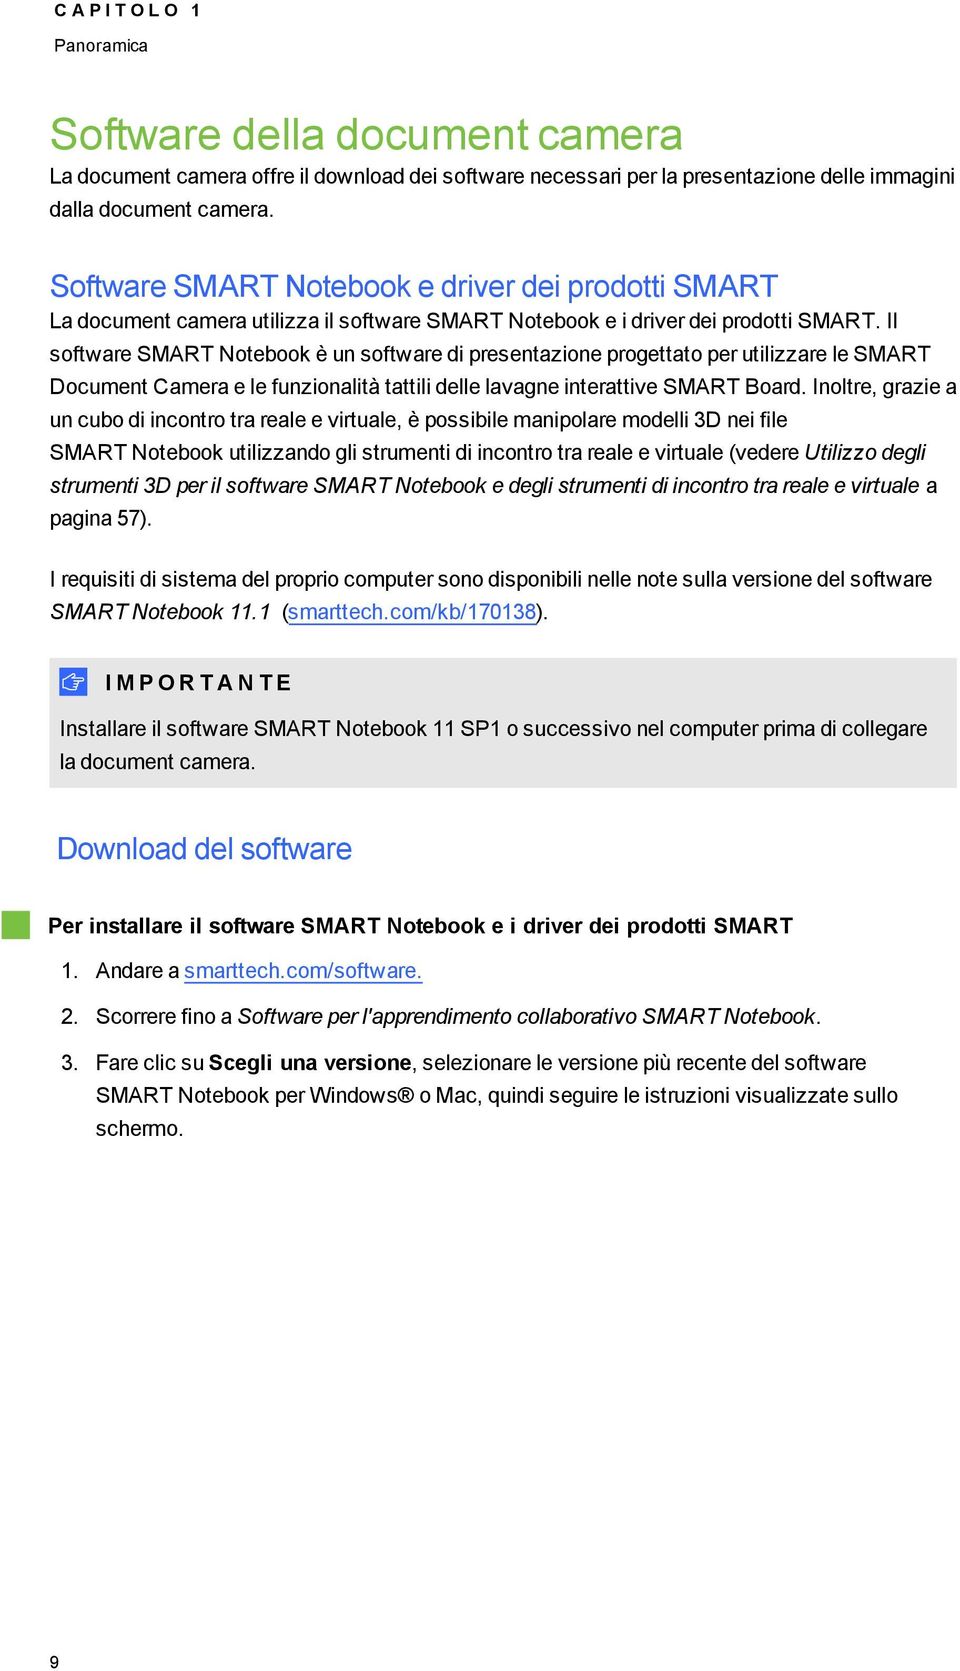 Il sftware SMART Ntebk è un sftware di presentazine prgettat per utilizzare le SMART Dcument Camera e le funzinalità tattili delle lavagne interattive SMART Bard.